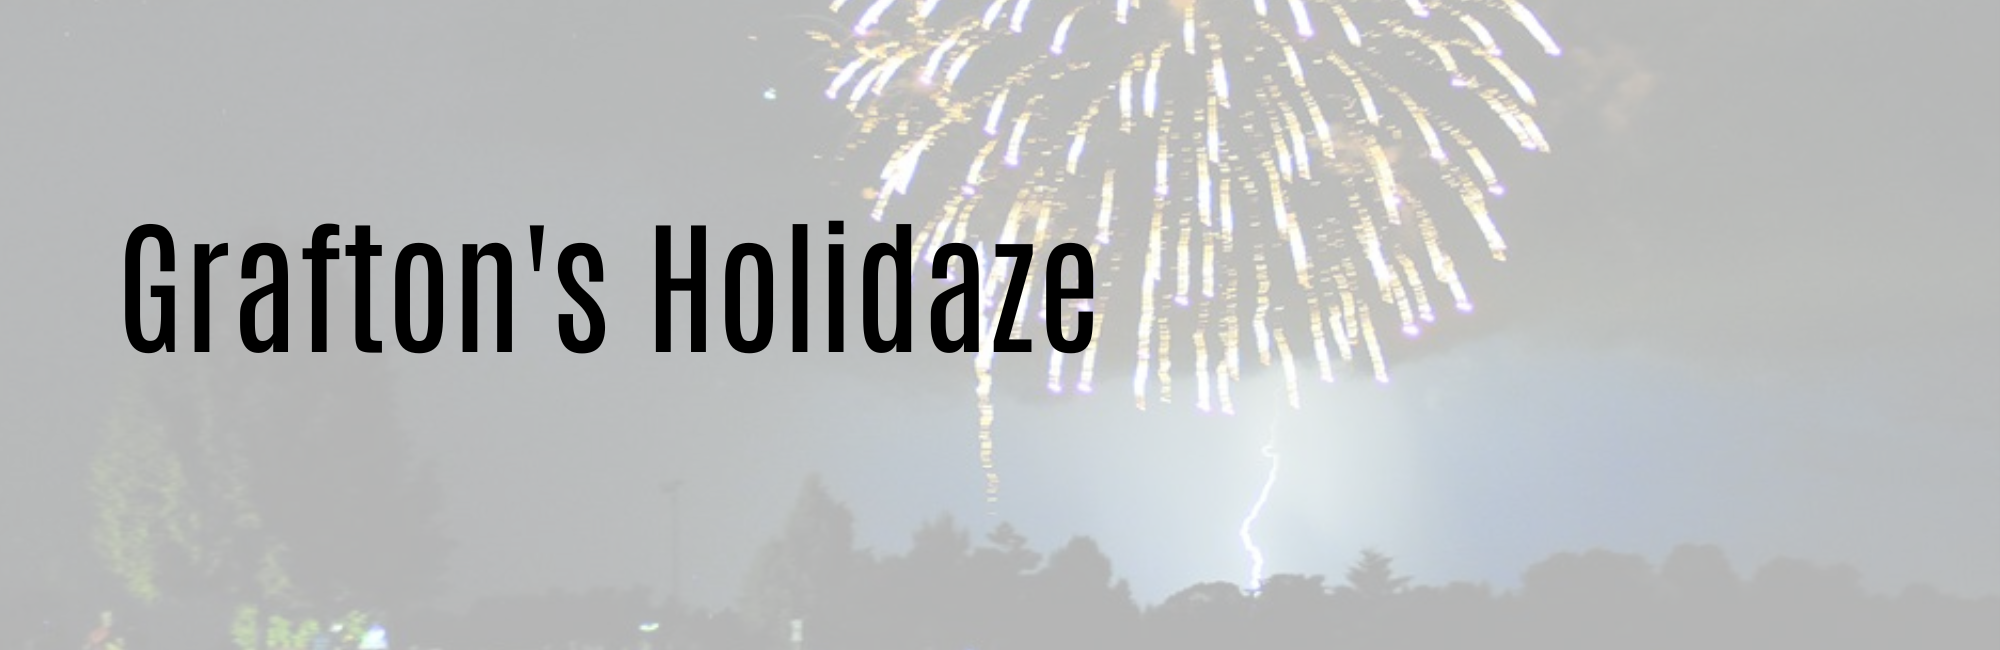 Holidaze Webpage Title Image (1)